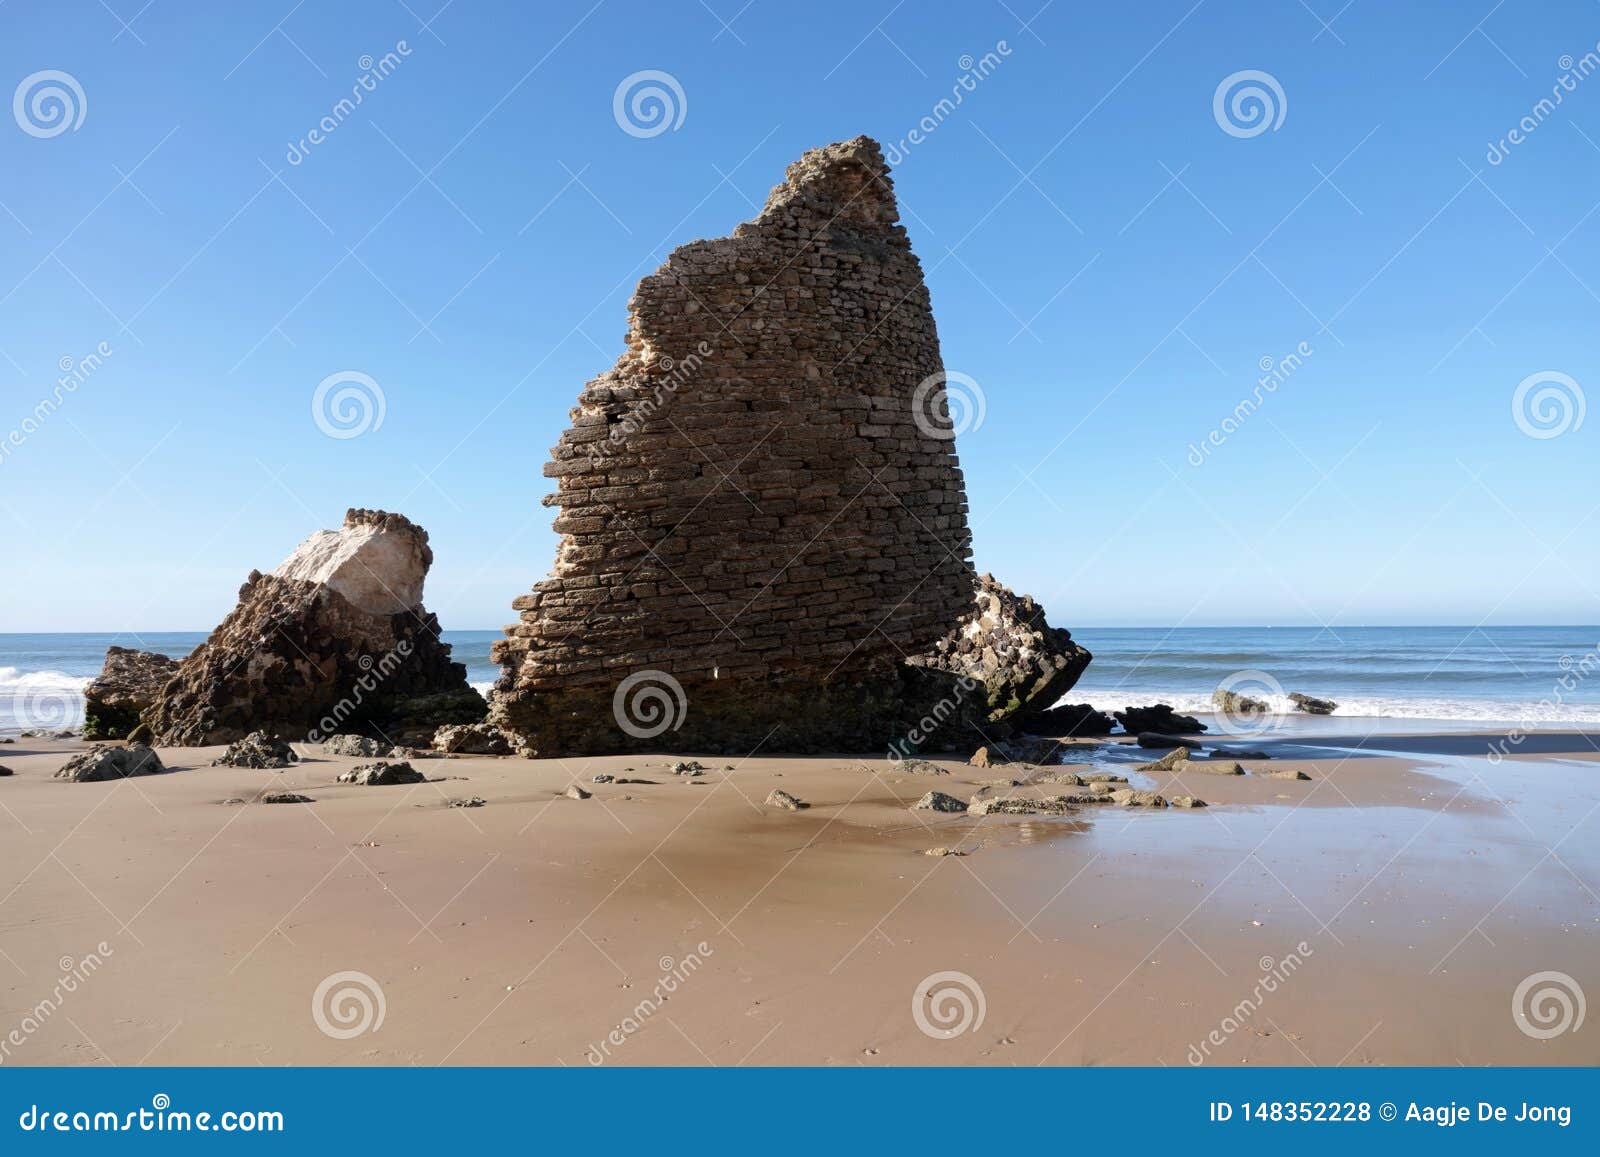 torre del loro mazagon remains at playa de rompeculos beach in mazagon, spain